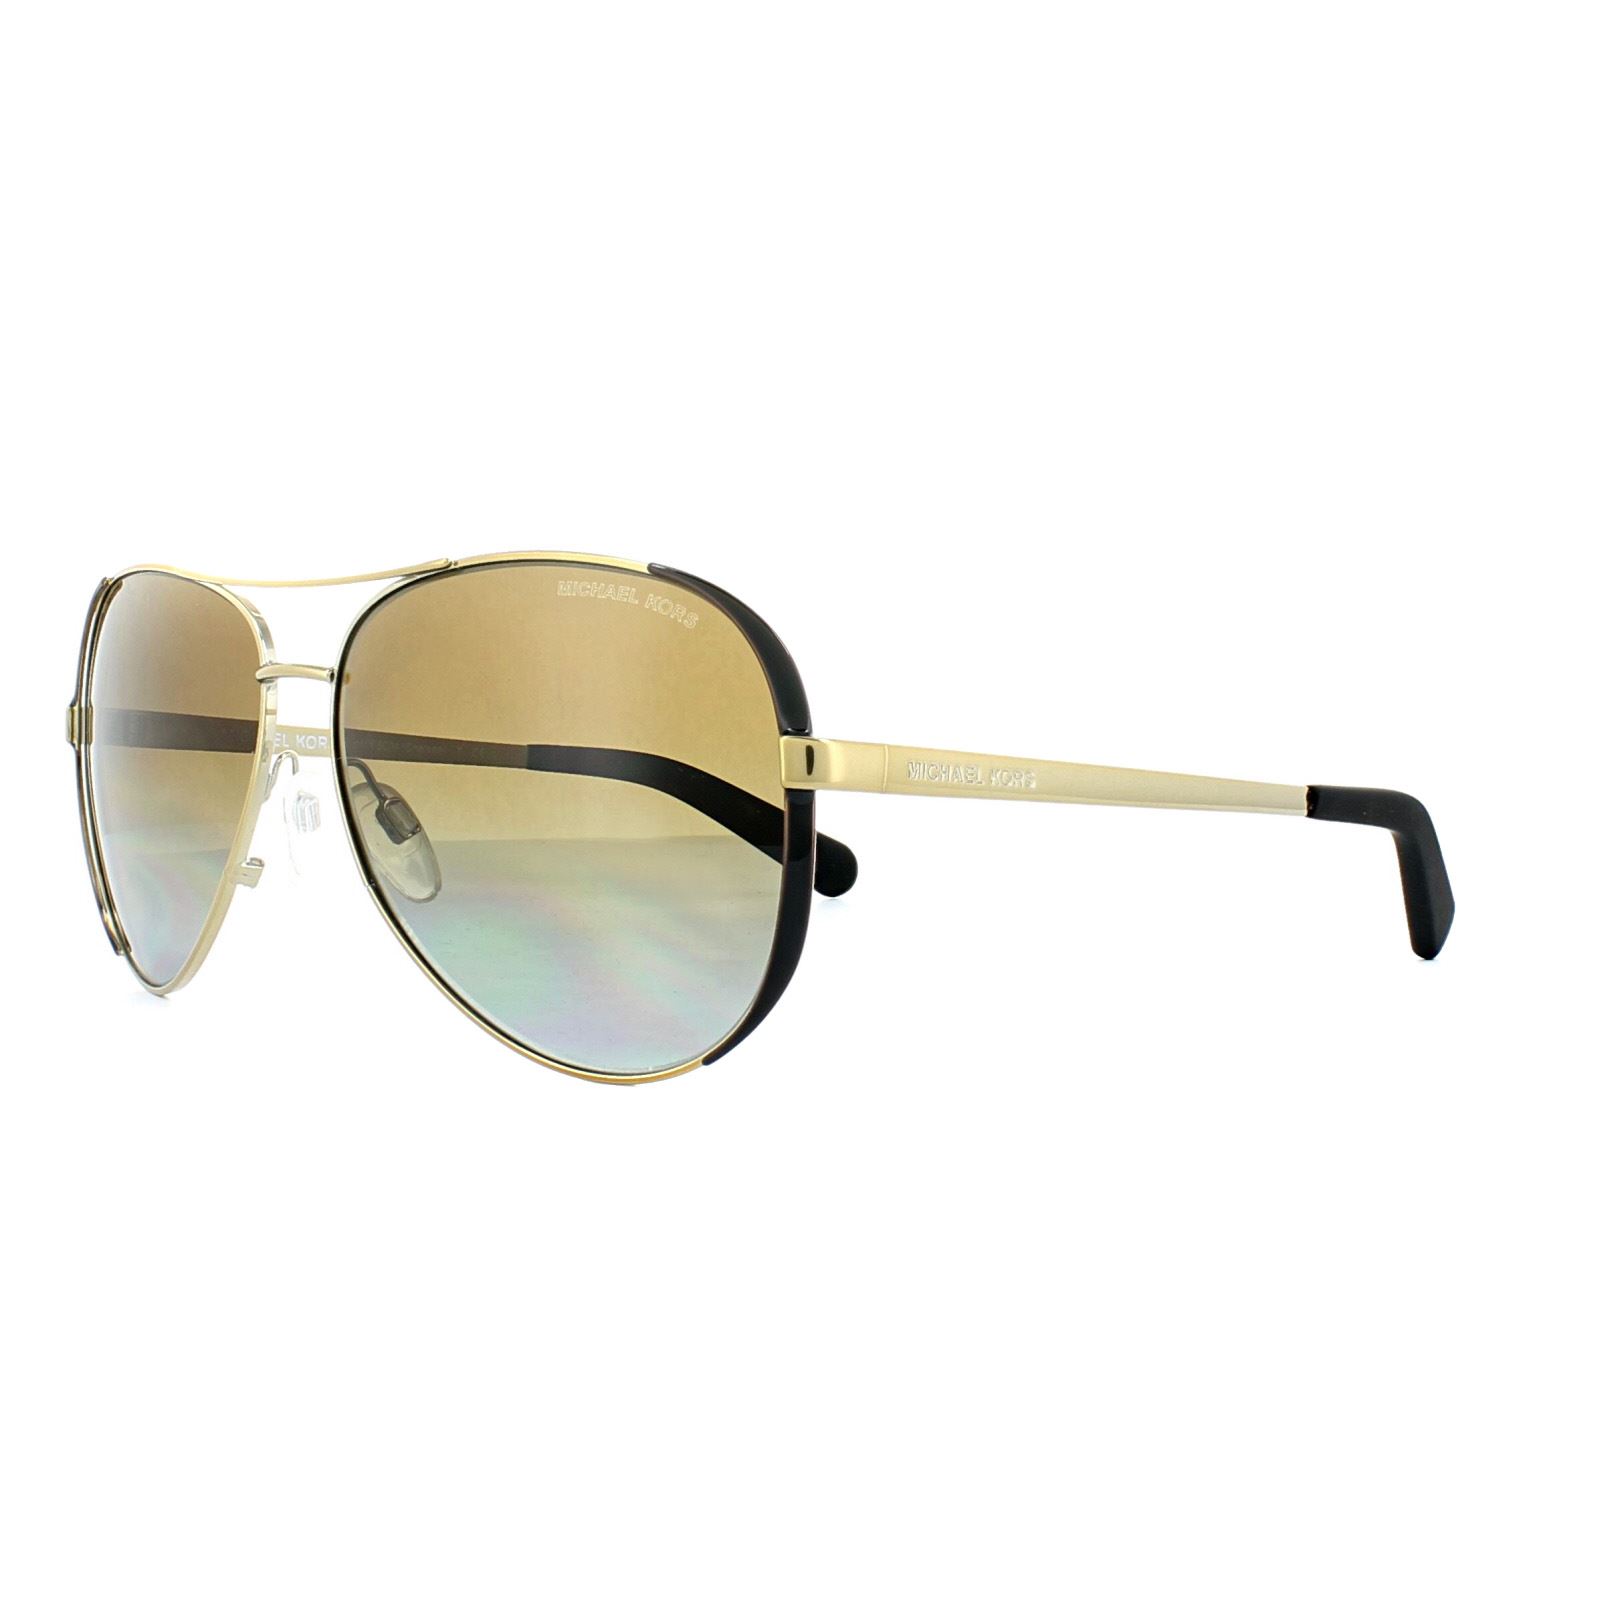 Aviator sunglasses Michael Kors Black in Metal  22926925